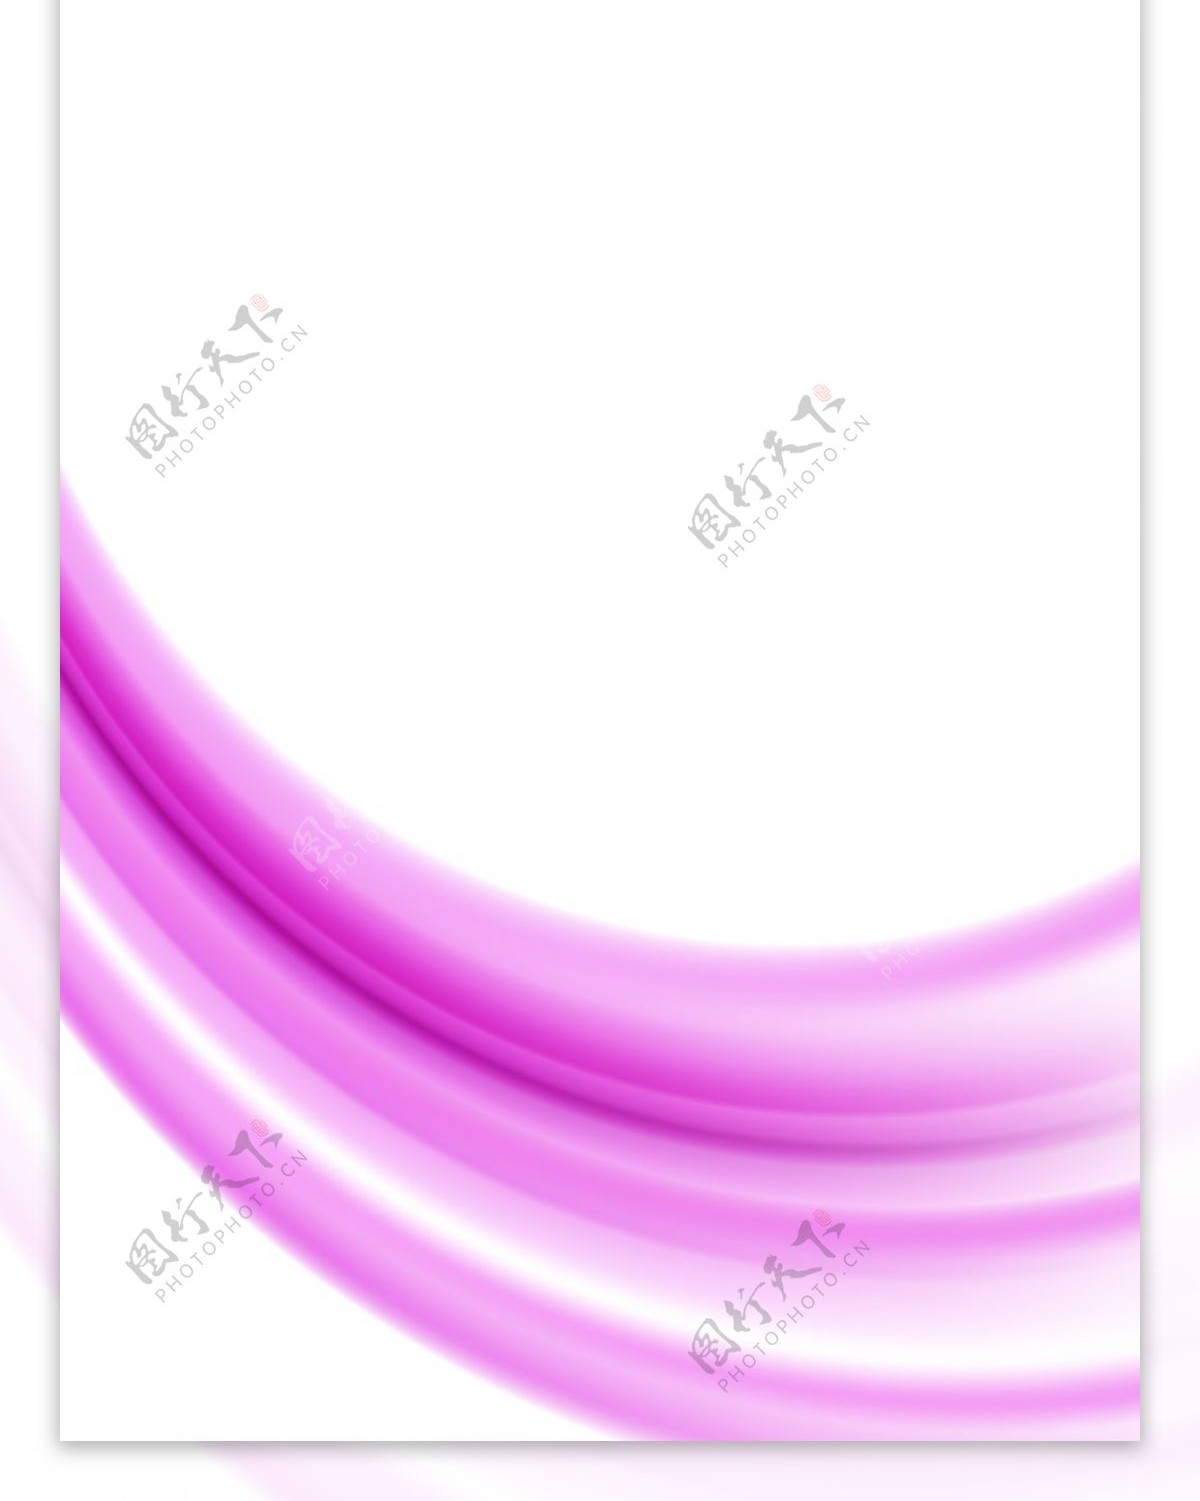 精美紫色展架背景模板设计素材画面设计